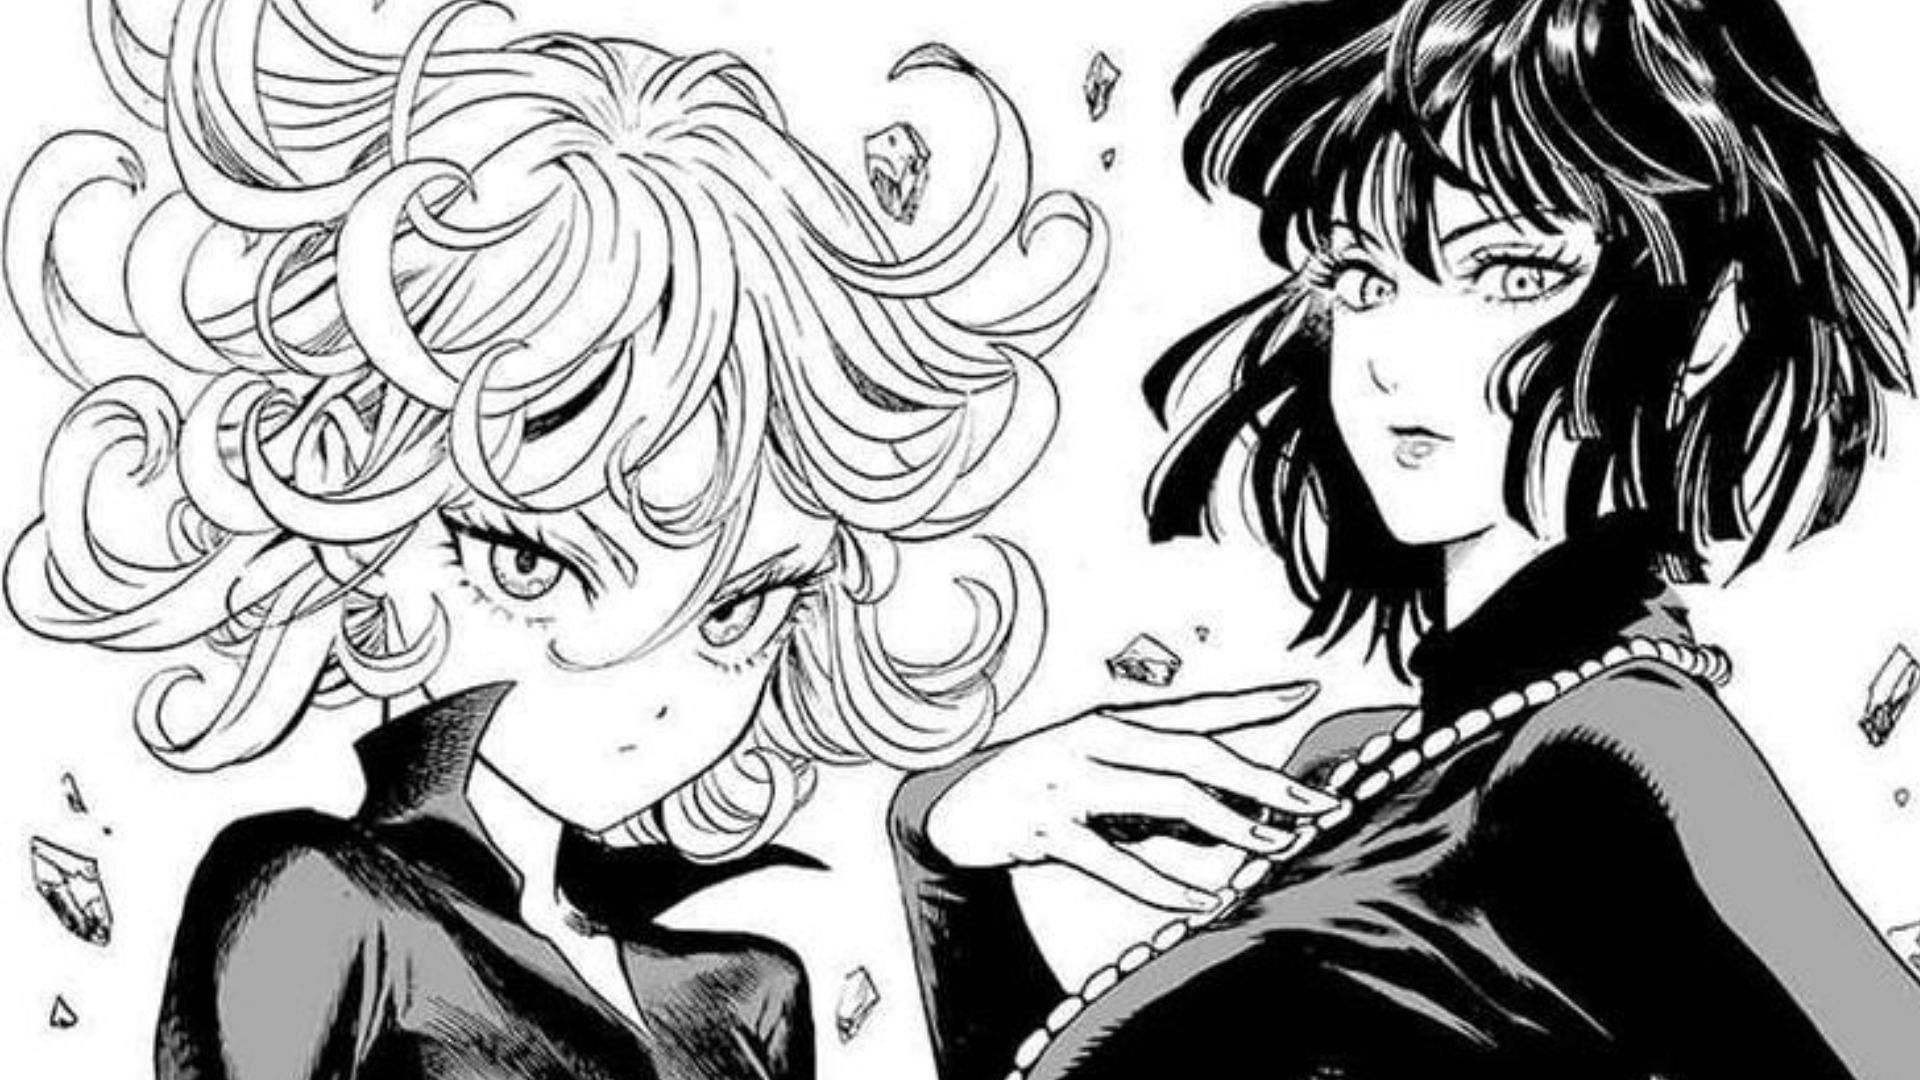 Tatsumaki and Fubuki as seen in the manga (Image via Yusuke Murata)